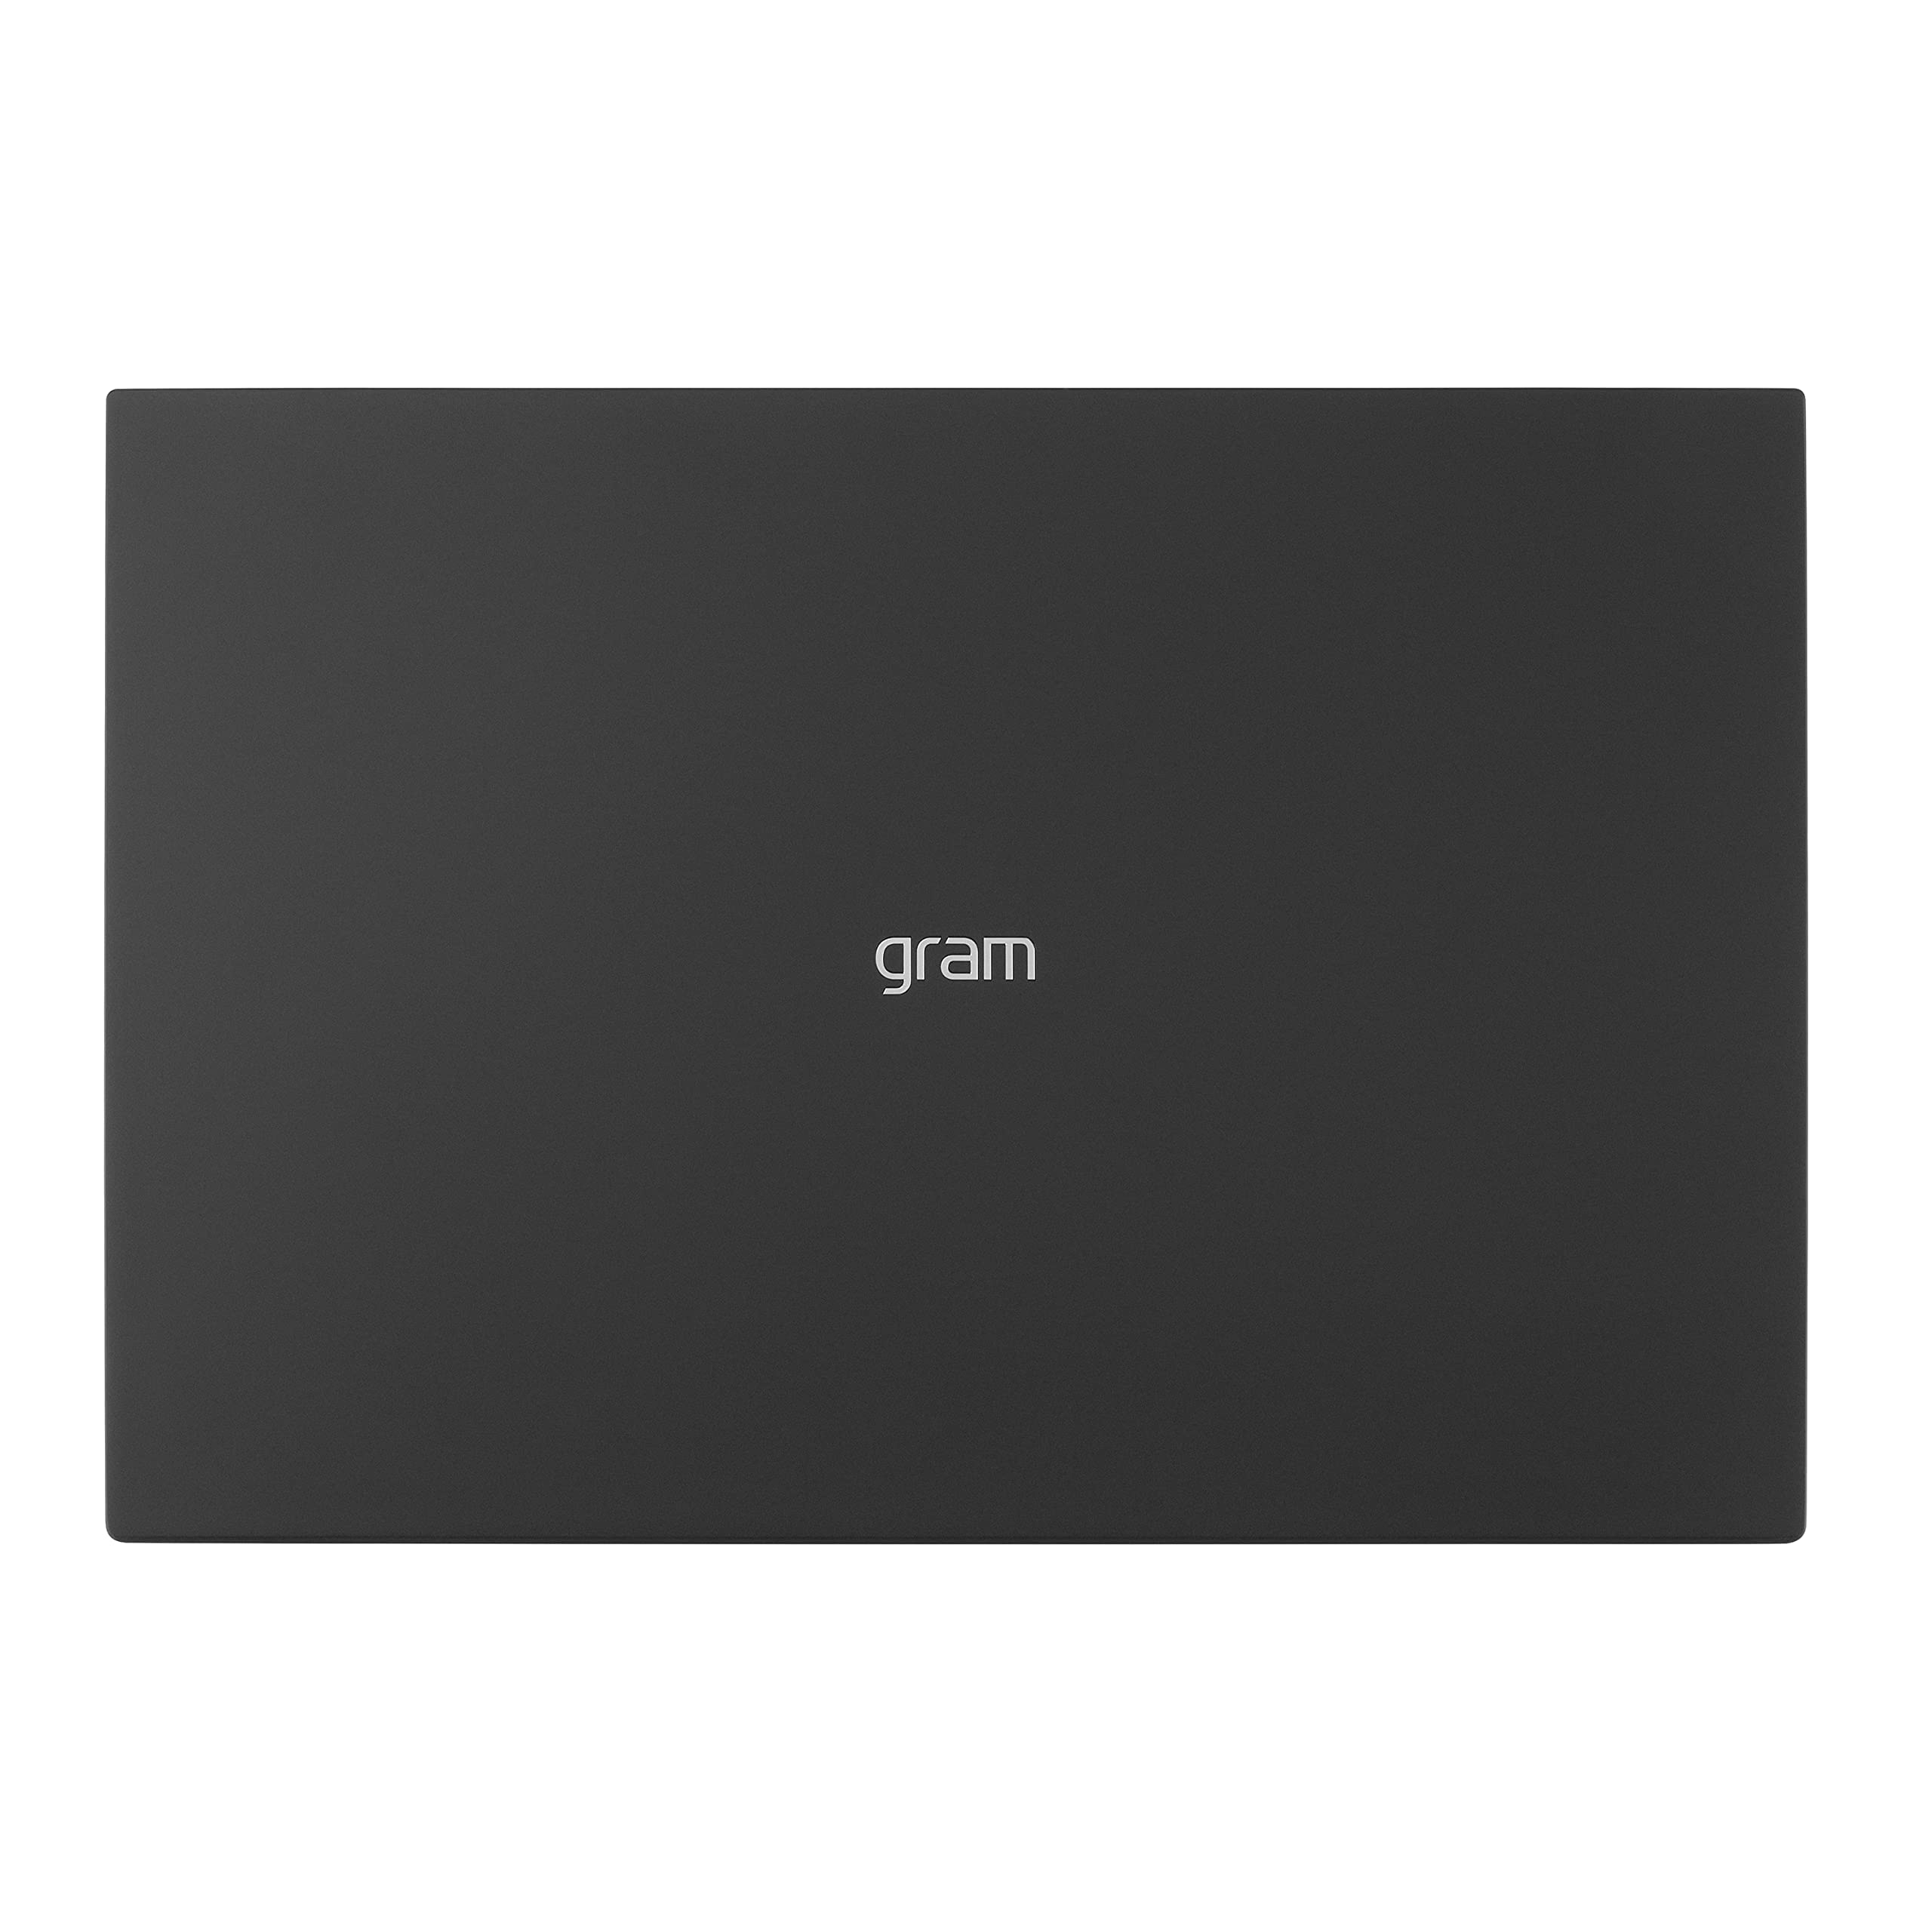 LG gram 16” Lightweight Laptop, Intel 13th Gen Core i7 Evo Platform, Windows 11 Home, NVIDIA RTX3050 4GB GPU, 32GB RAM, 2TB SSD, Black